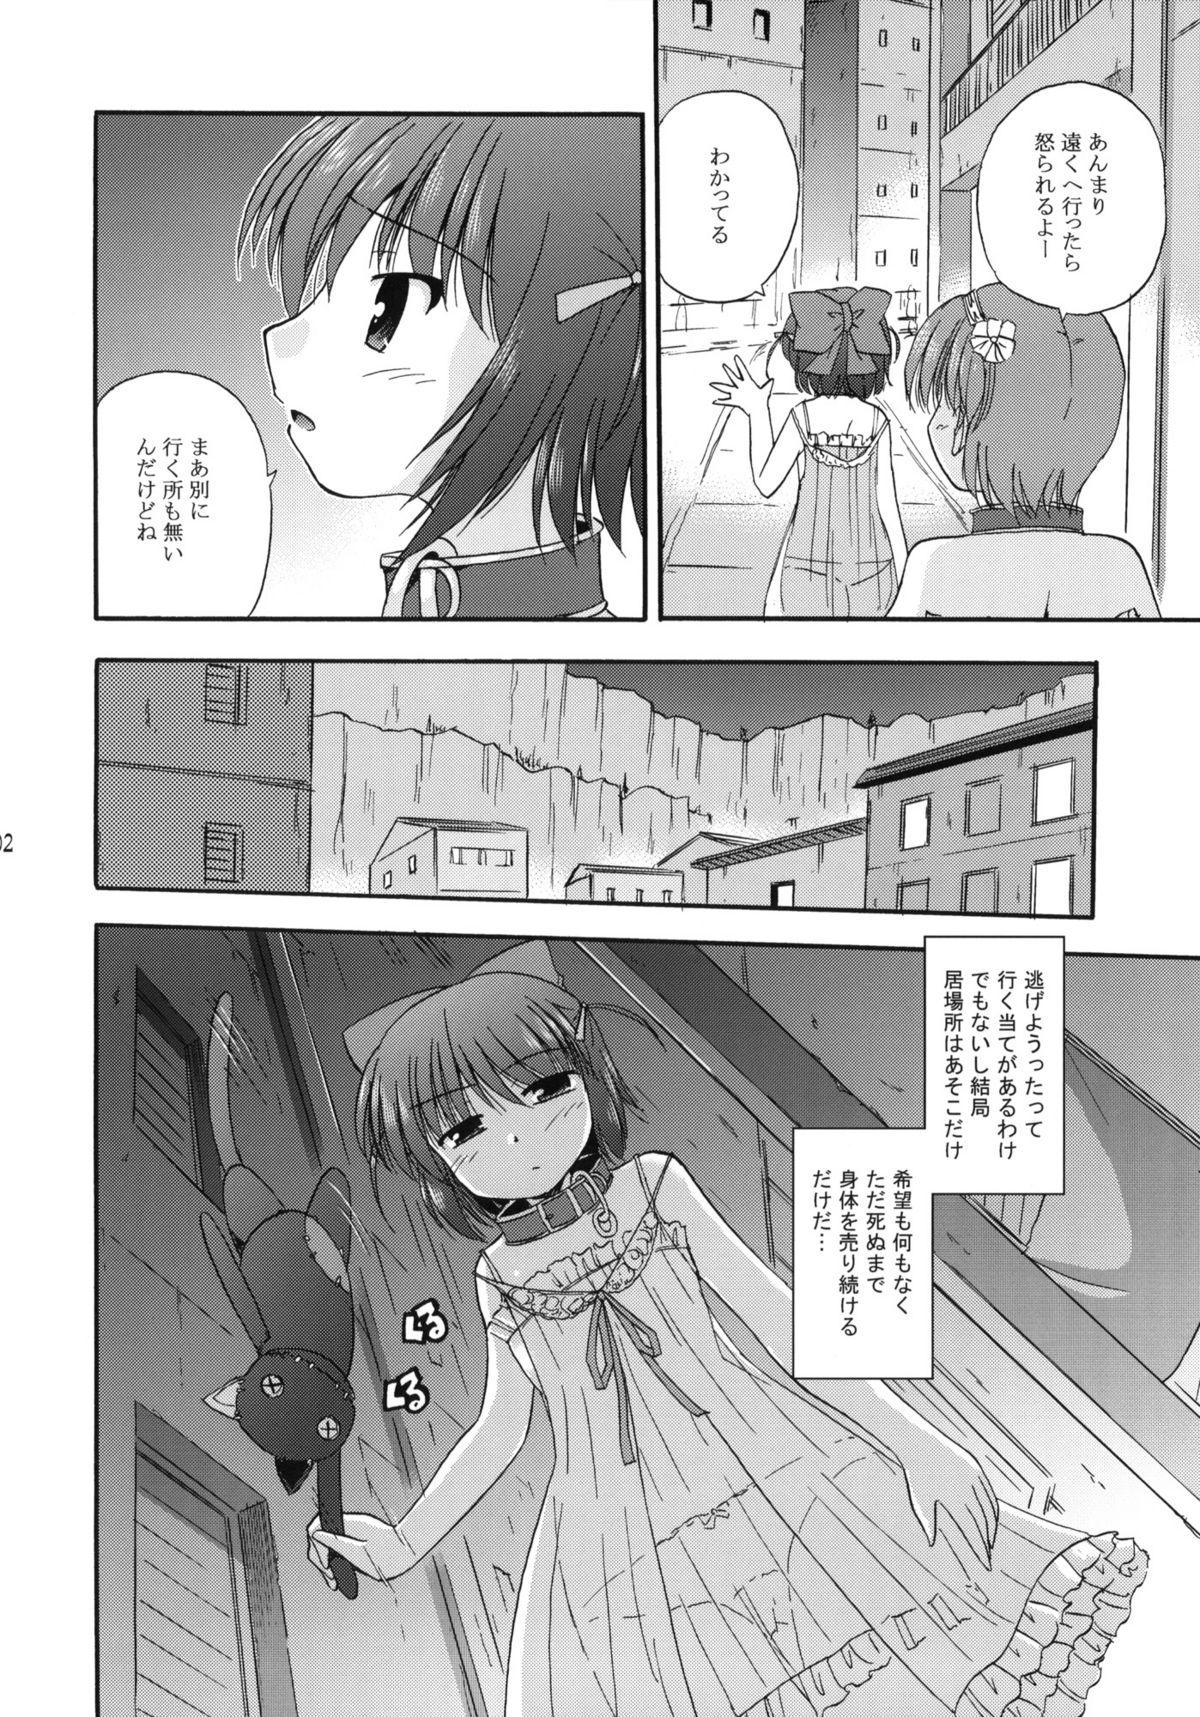 Huge Unreasonable world - Aiyoku no eustia Lady - Page 3